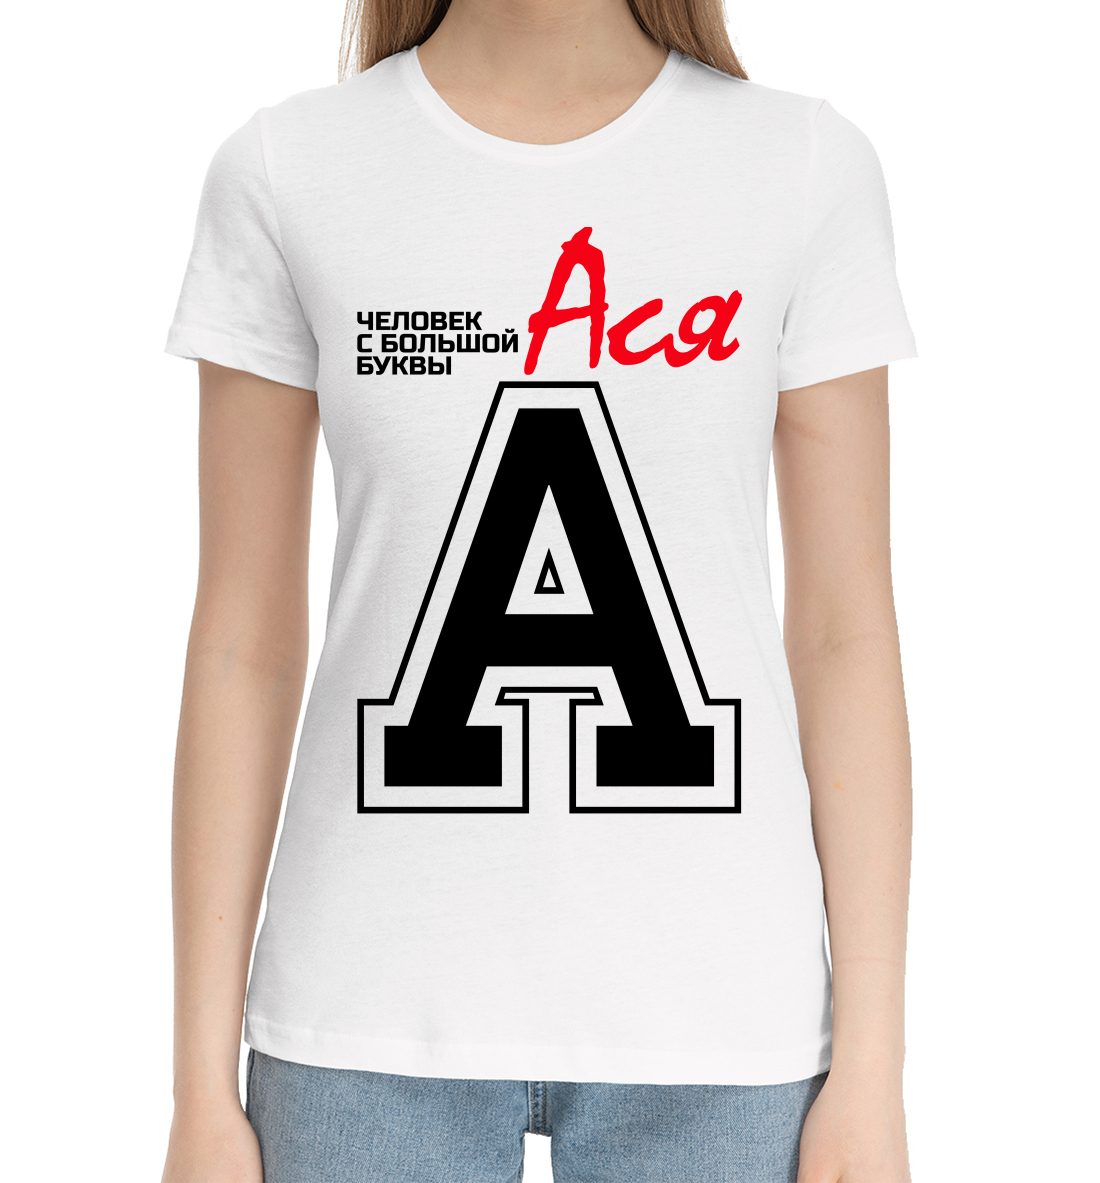 Женская Хлопковая футболка с принтом Ася, артикул IMR-584885-hfu-1mp